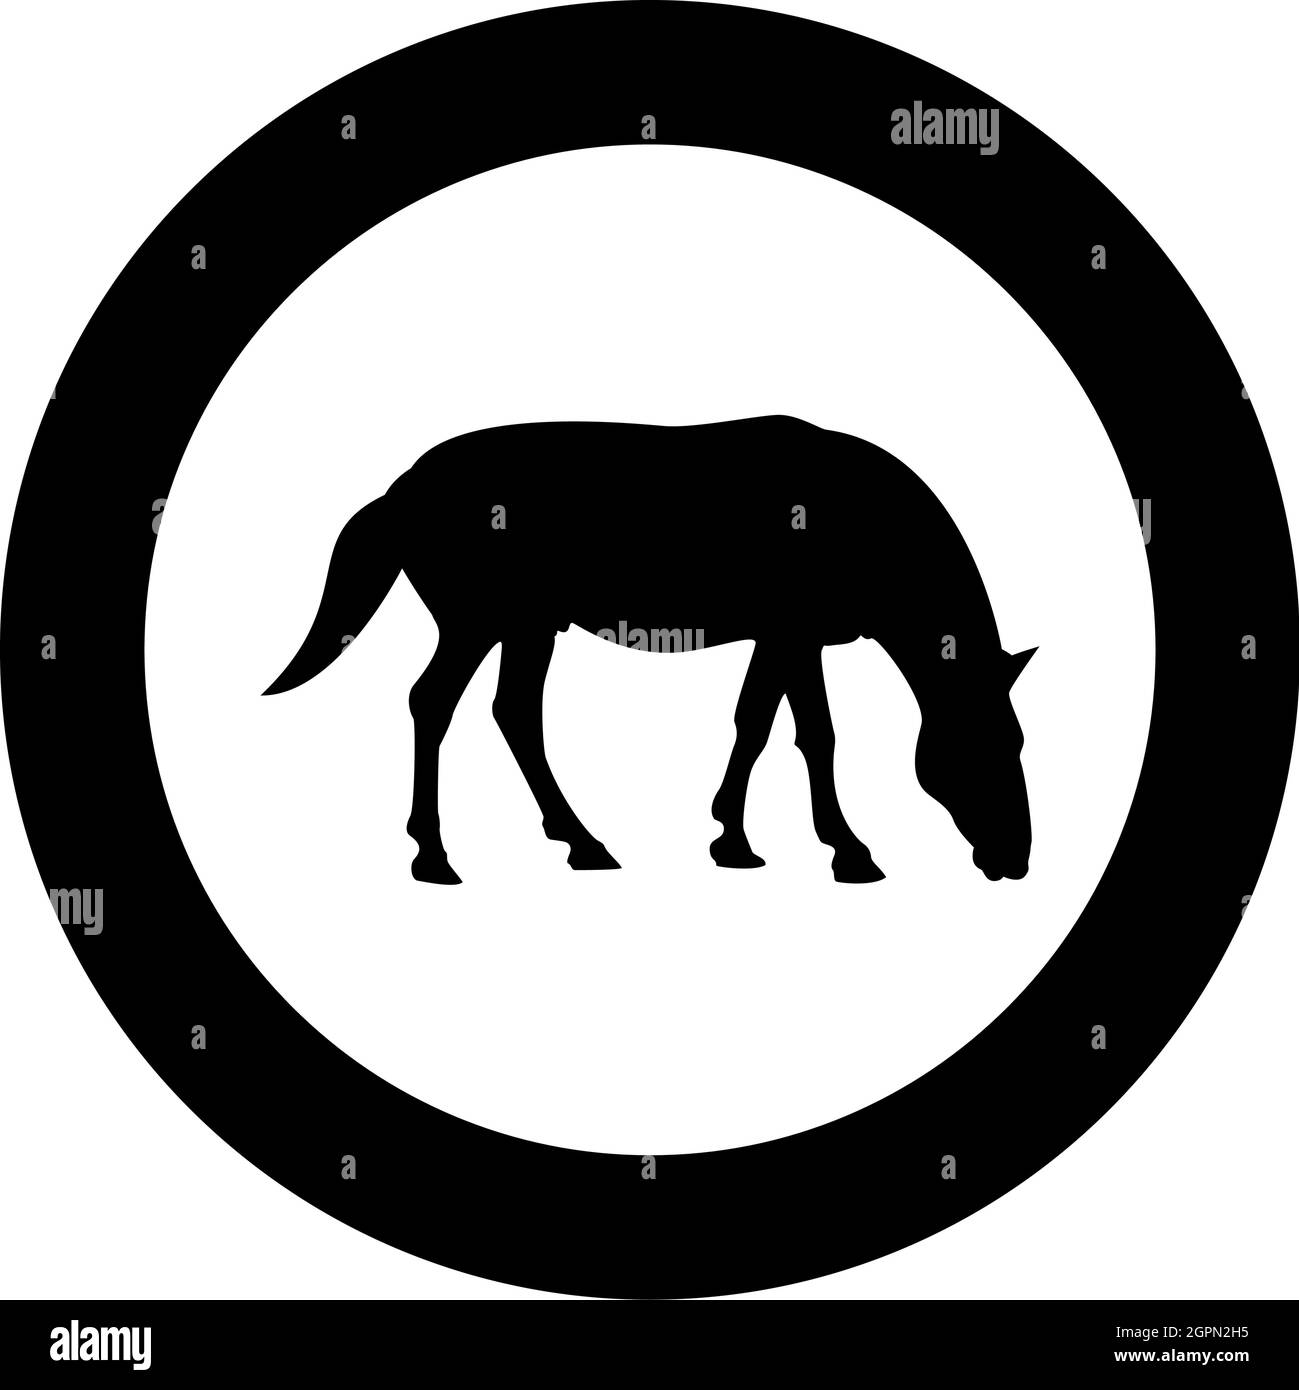 Cavallo Steed Equestre Equestre Stallion purosangue Mustang silhouette in cerchio rotondo colore nero vettore illustrazione solido contorno stile immagine Illustrazione Vettoriale